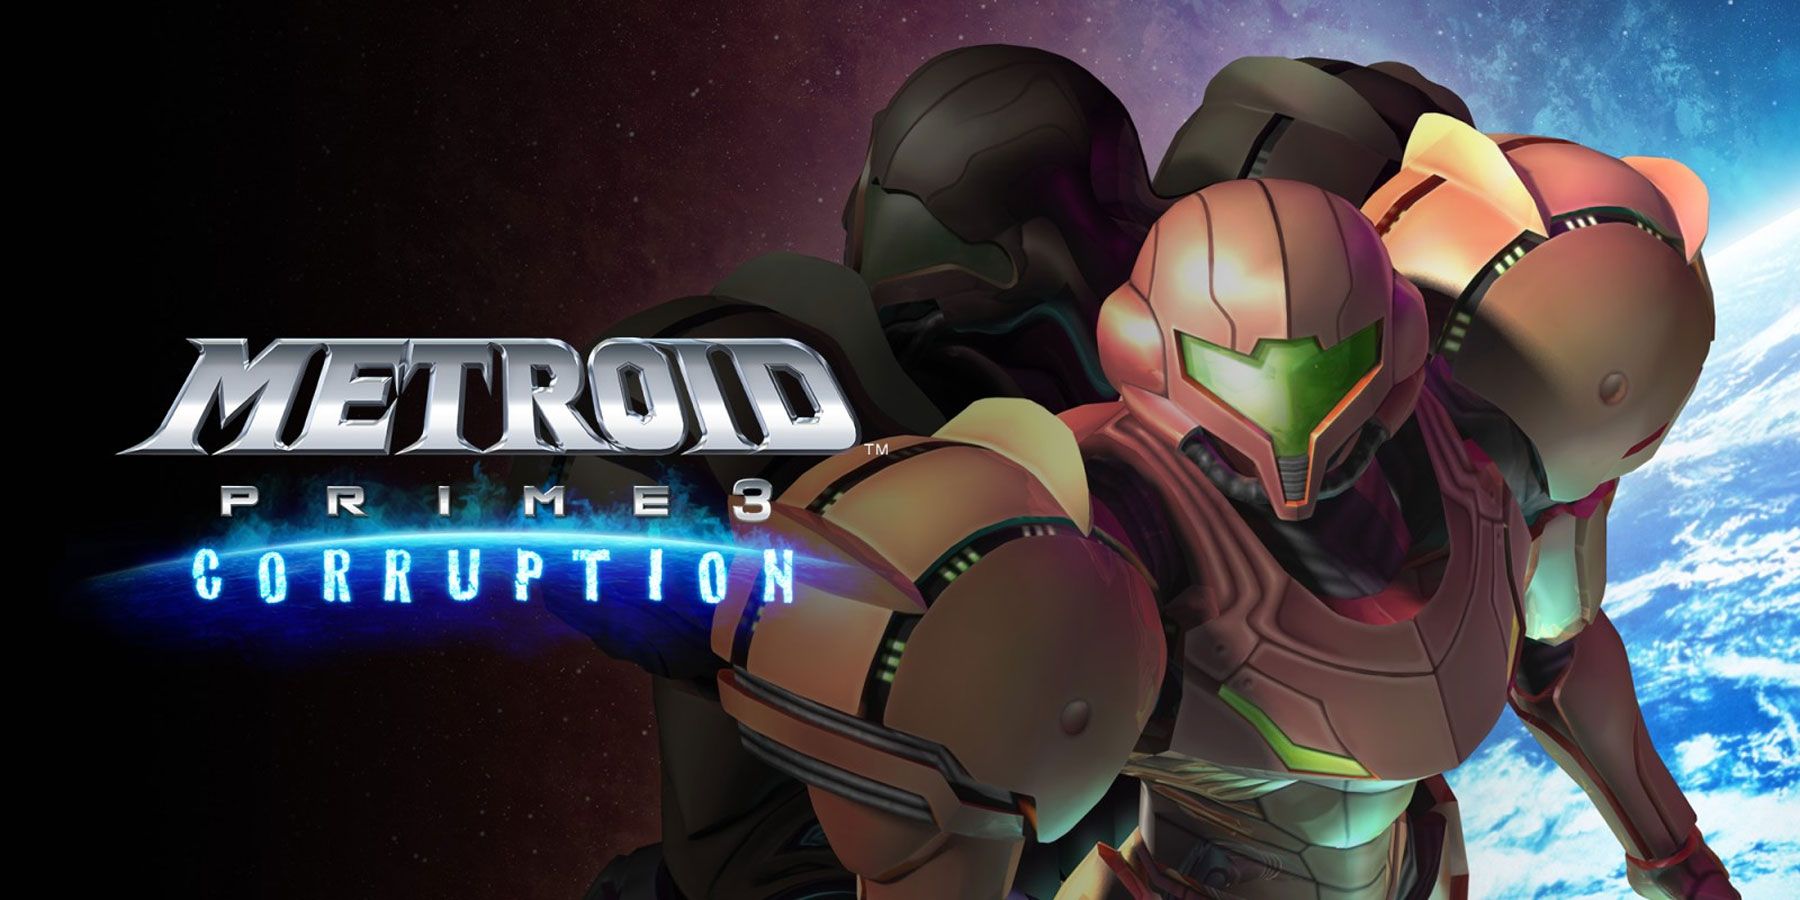 Metroid Prime 3 è stato originariamente presentato come un gioco open world